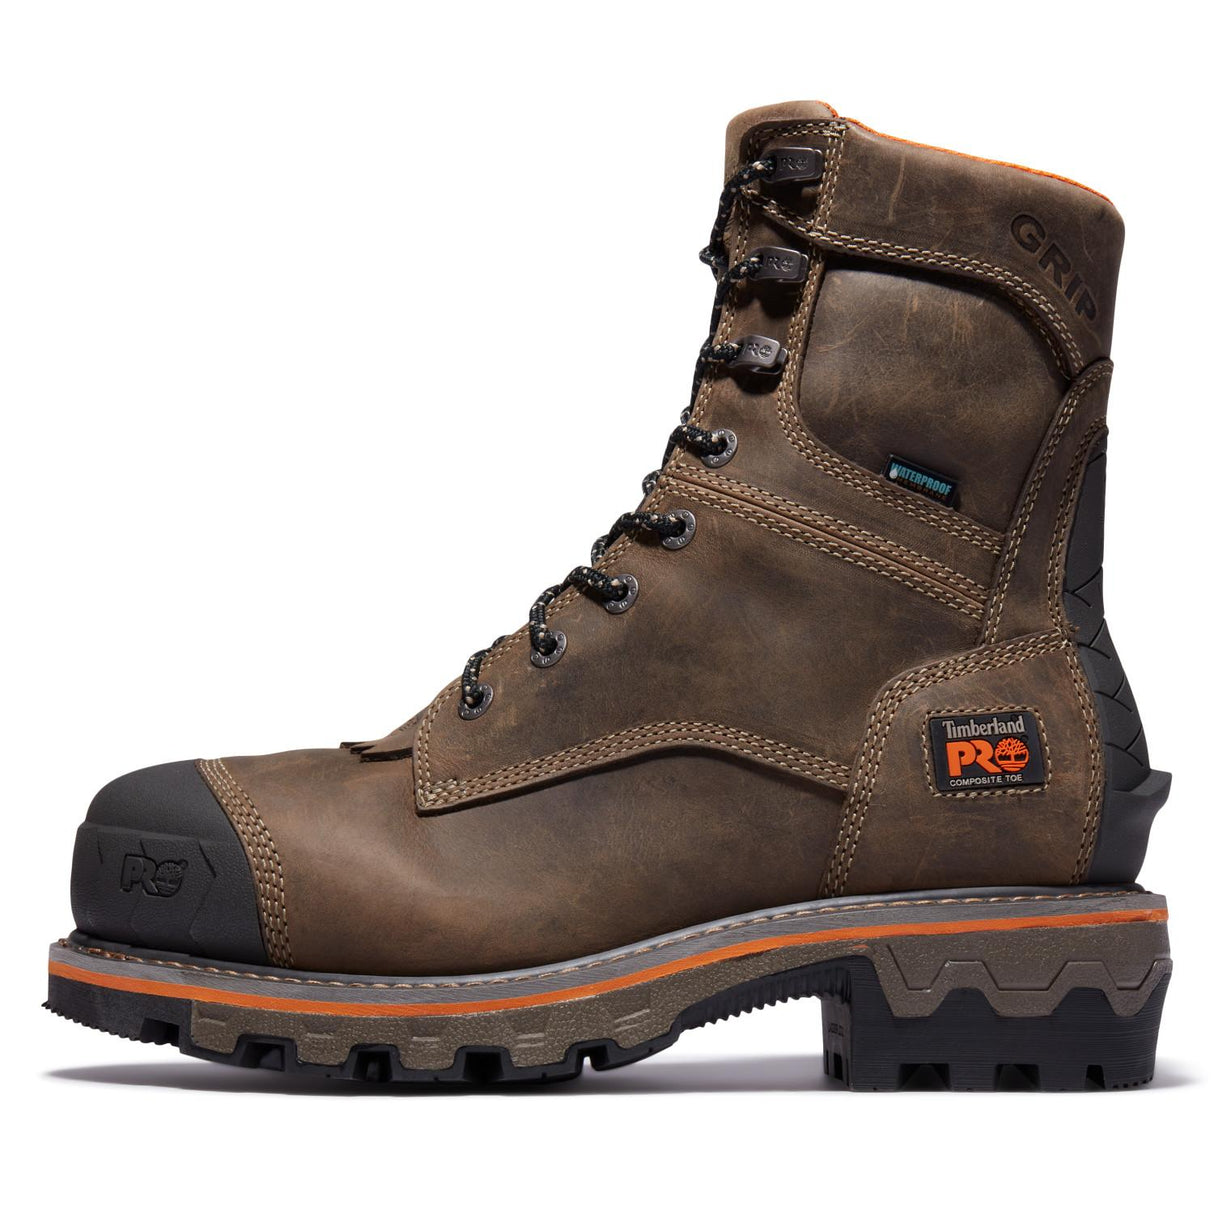 Timberland Pro-Boondock Hd Nt Waterproof Brown-Steel Toes-5